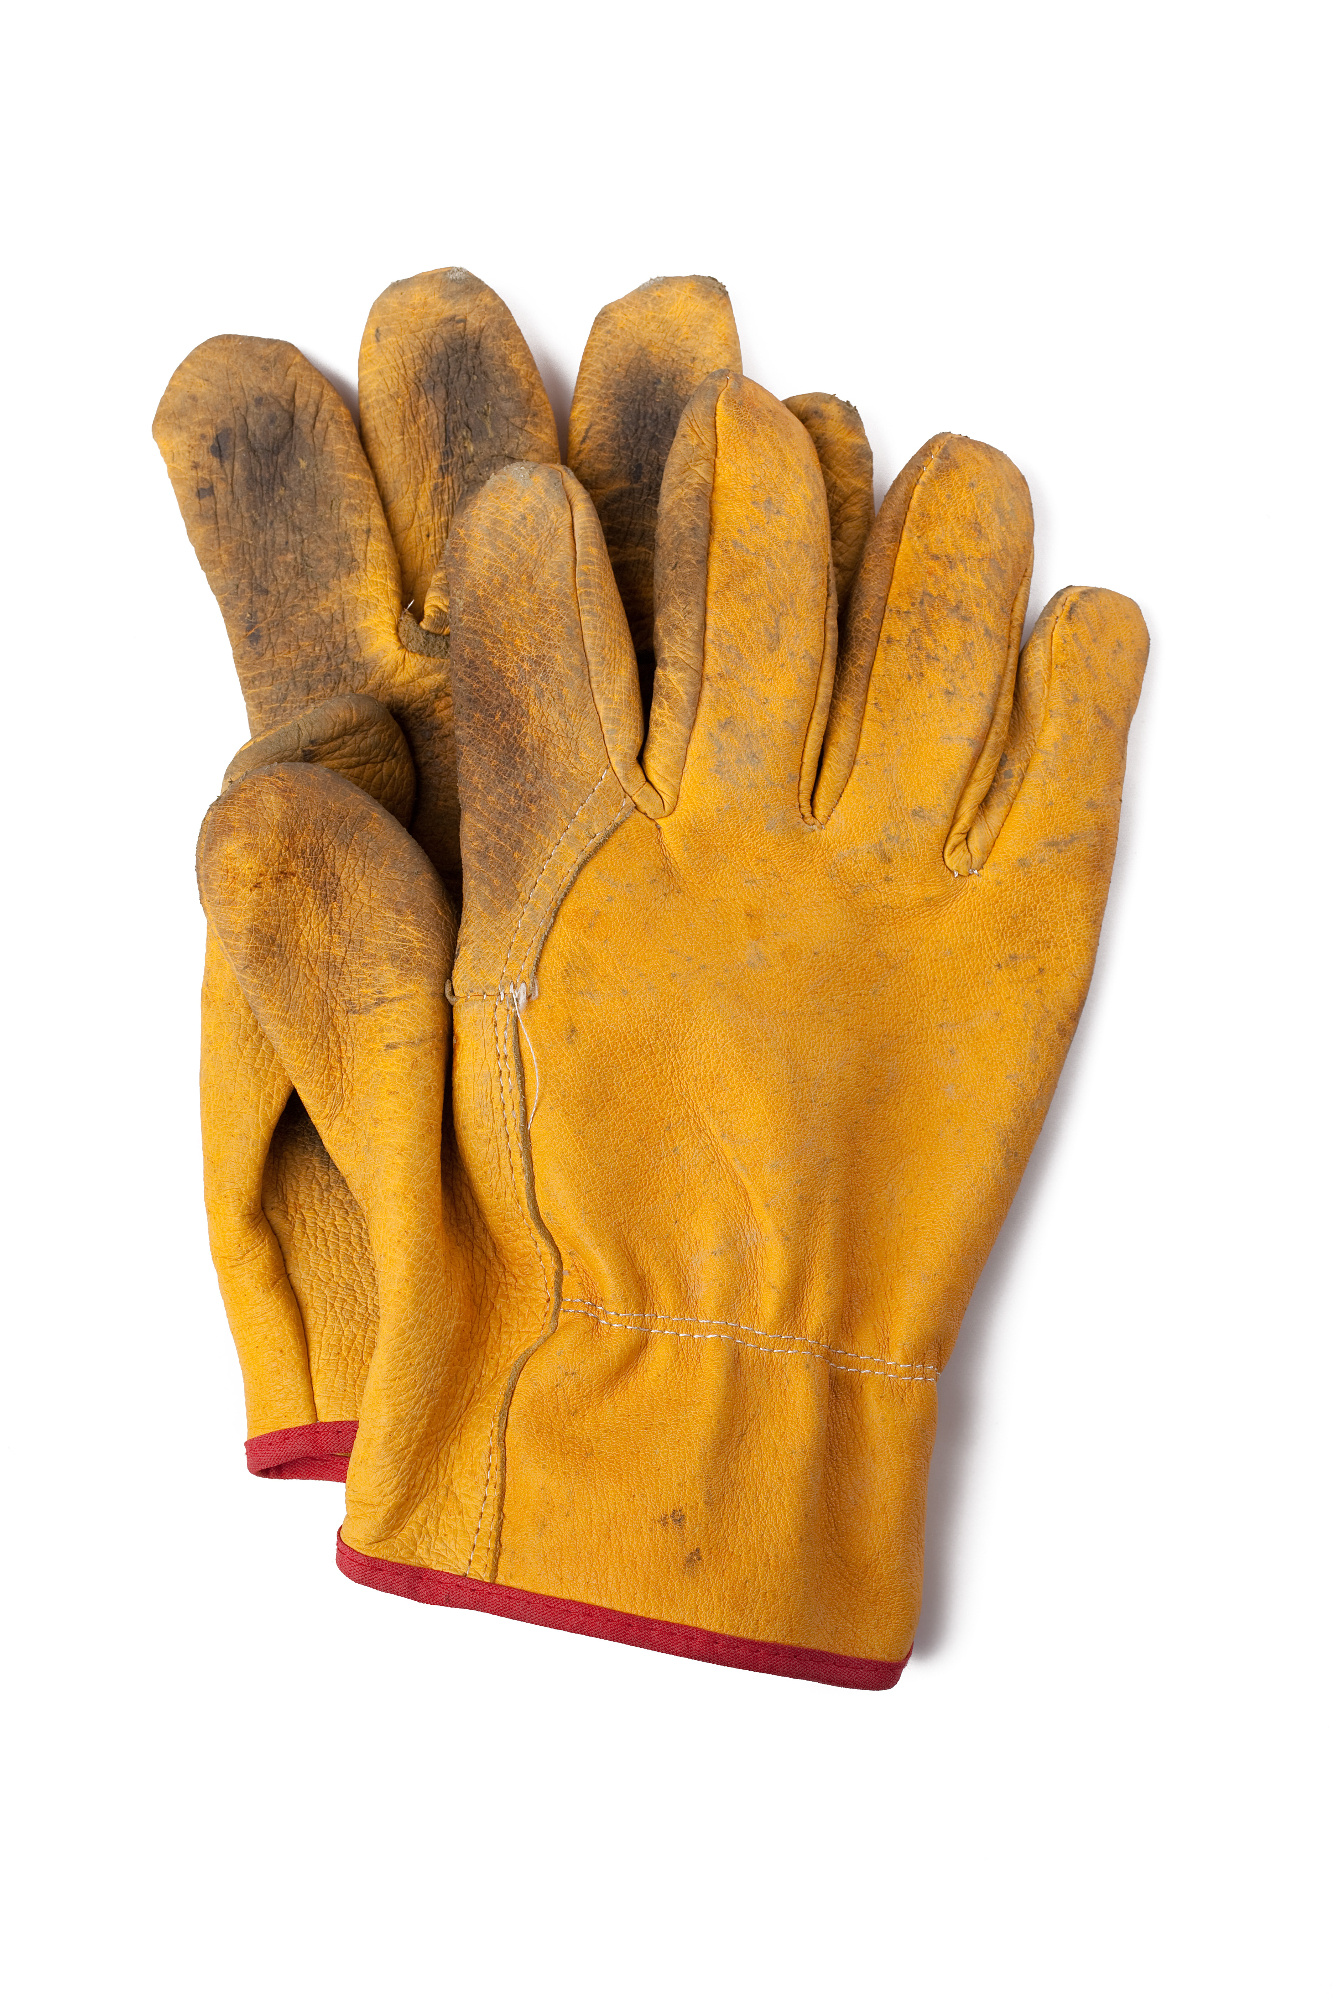 Ali res potrebujemo nove delovne rokavice?